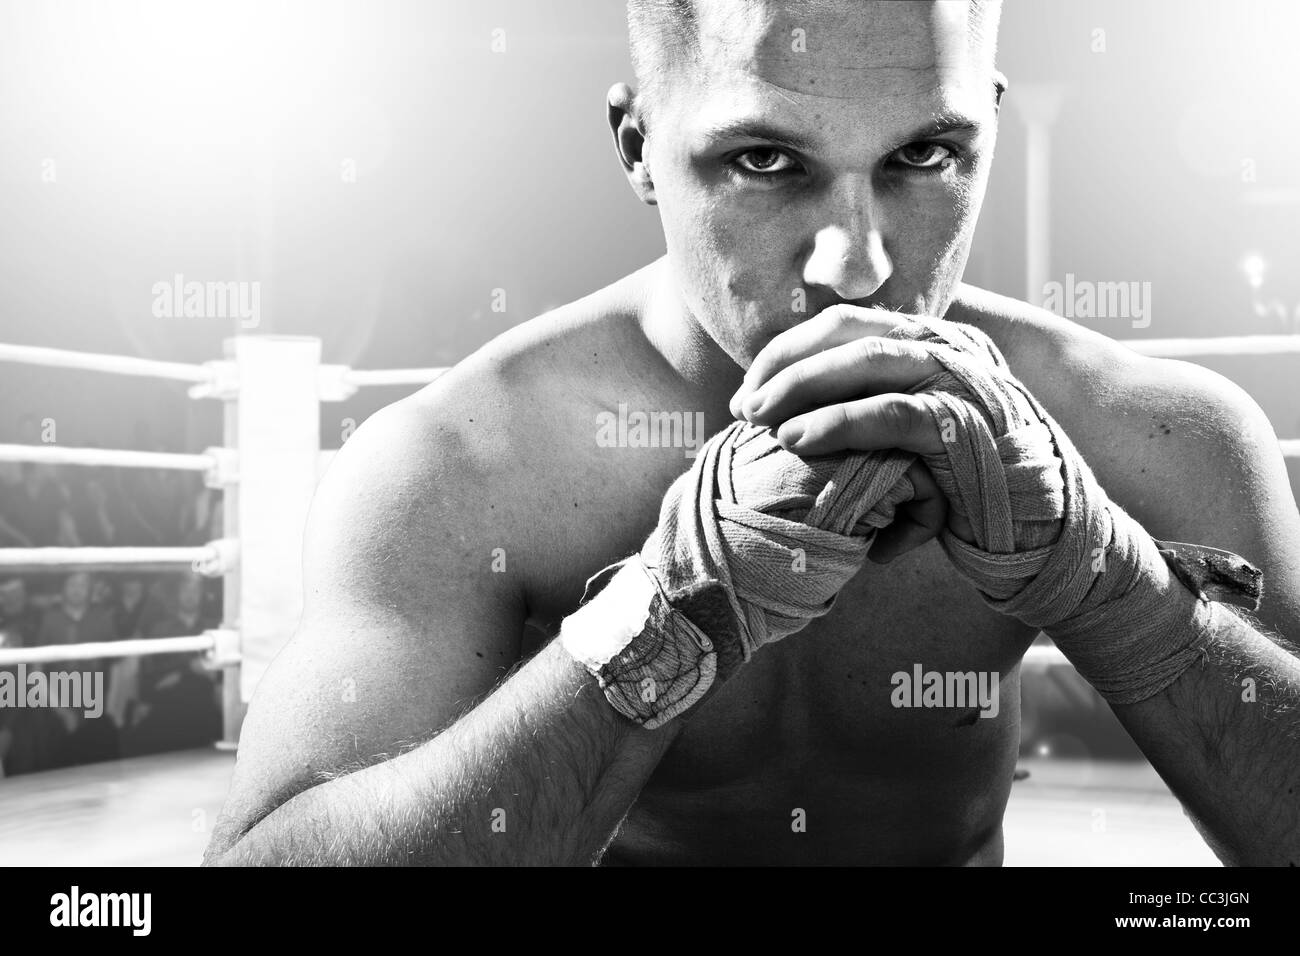 Kickboxer sentados en los combates ring Foto de stock